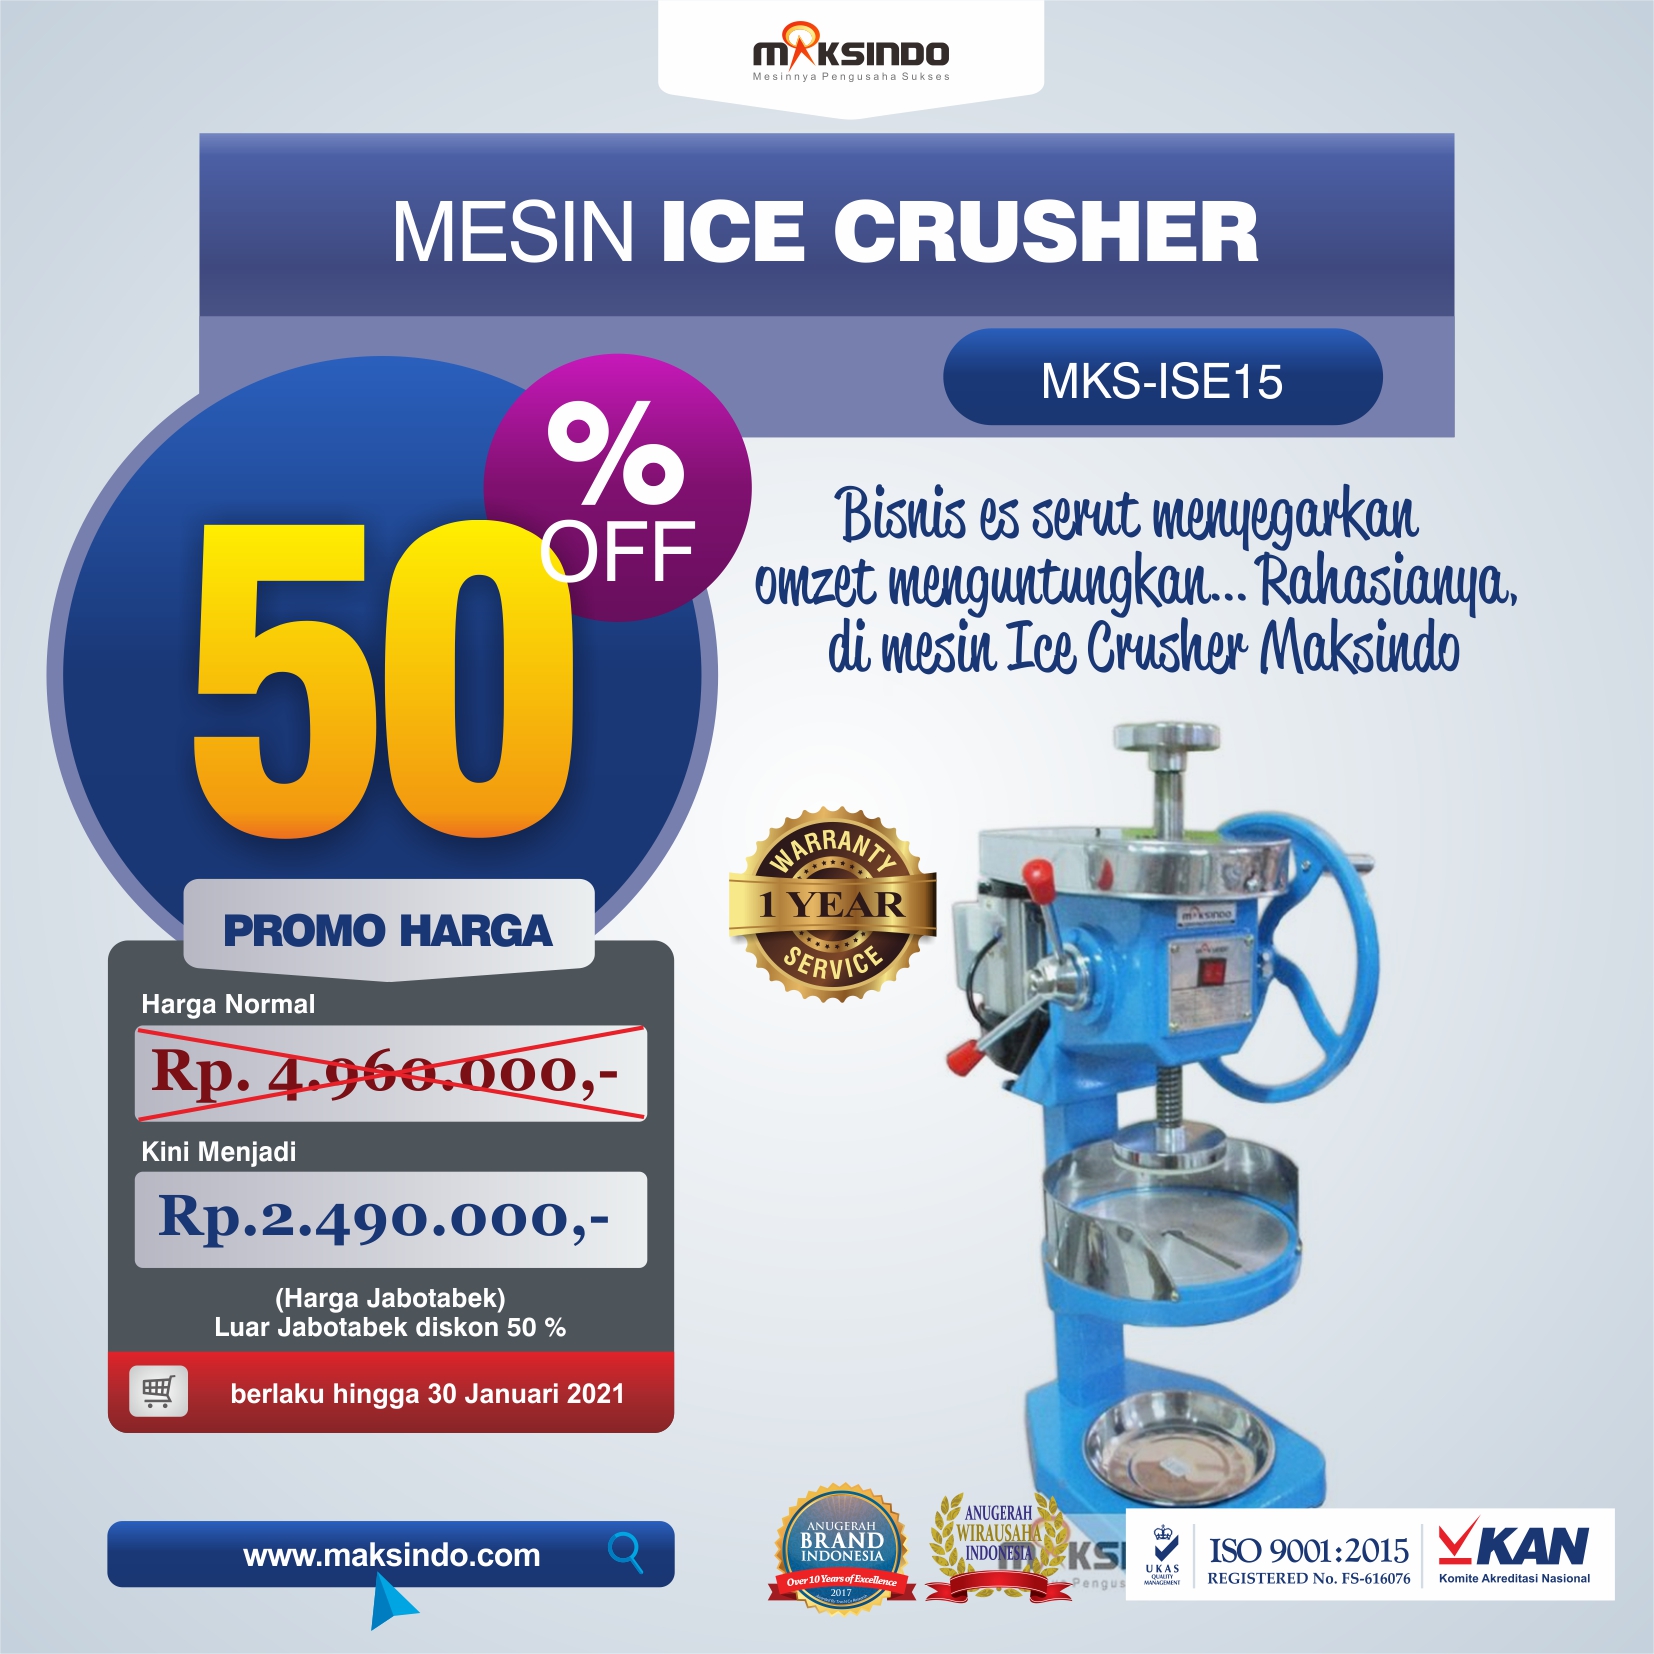 Jual Mesin Ice Crusher MKS-ISE15 di Medan